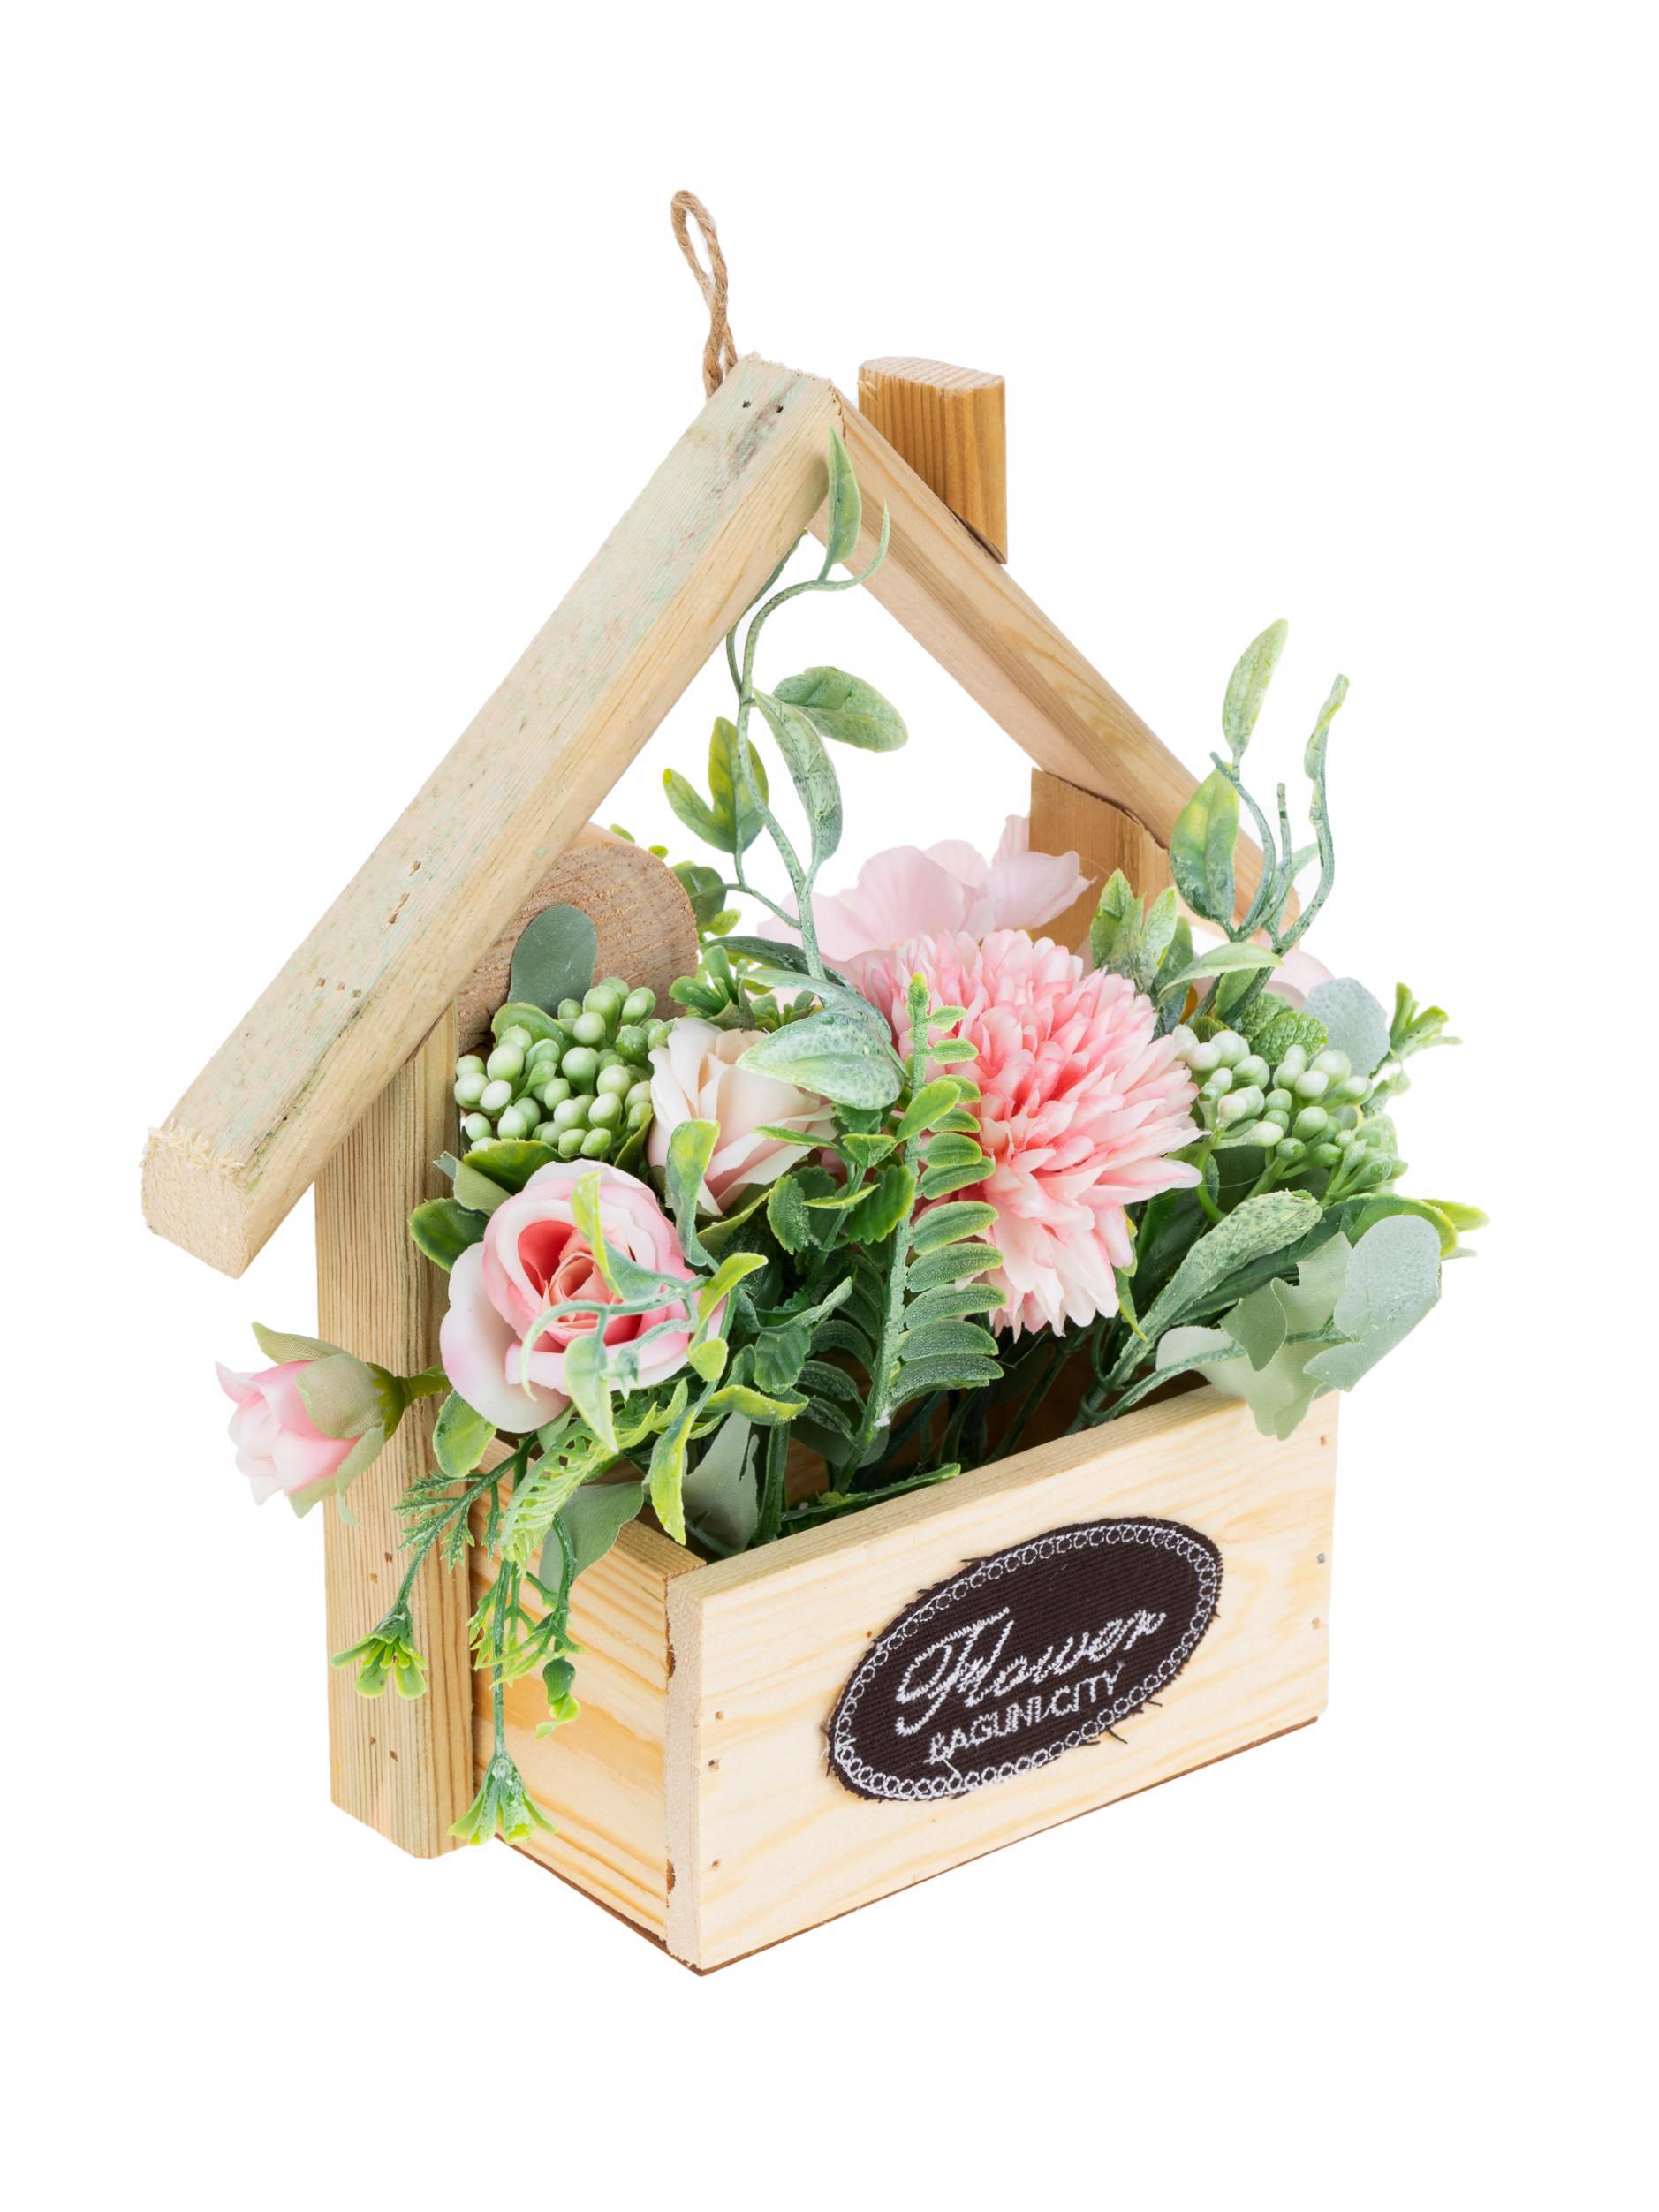 Купить искусственные цветы для декора в челябинске растения комнатные даром